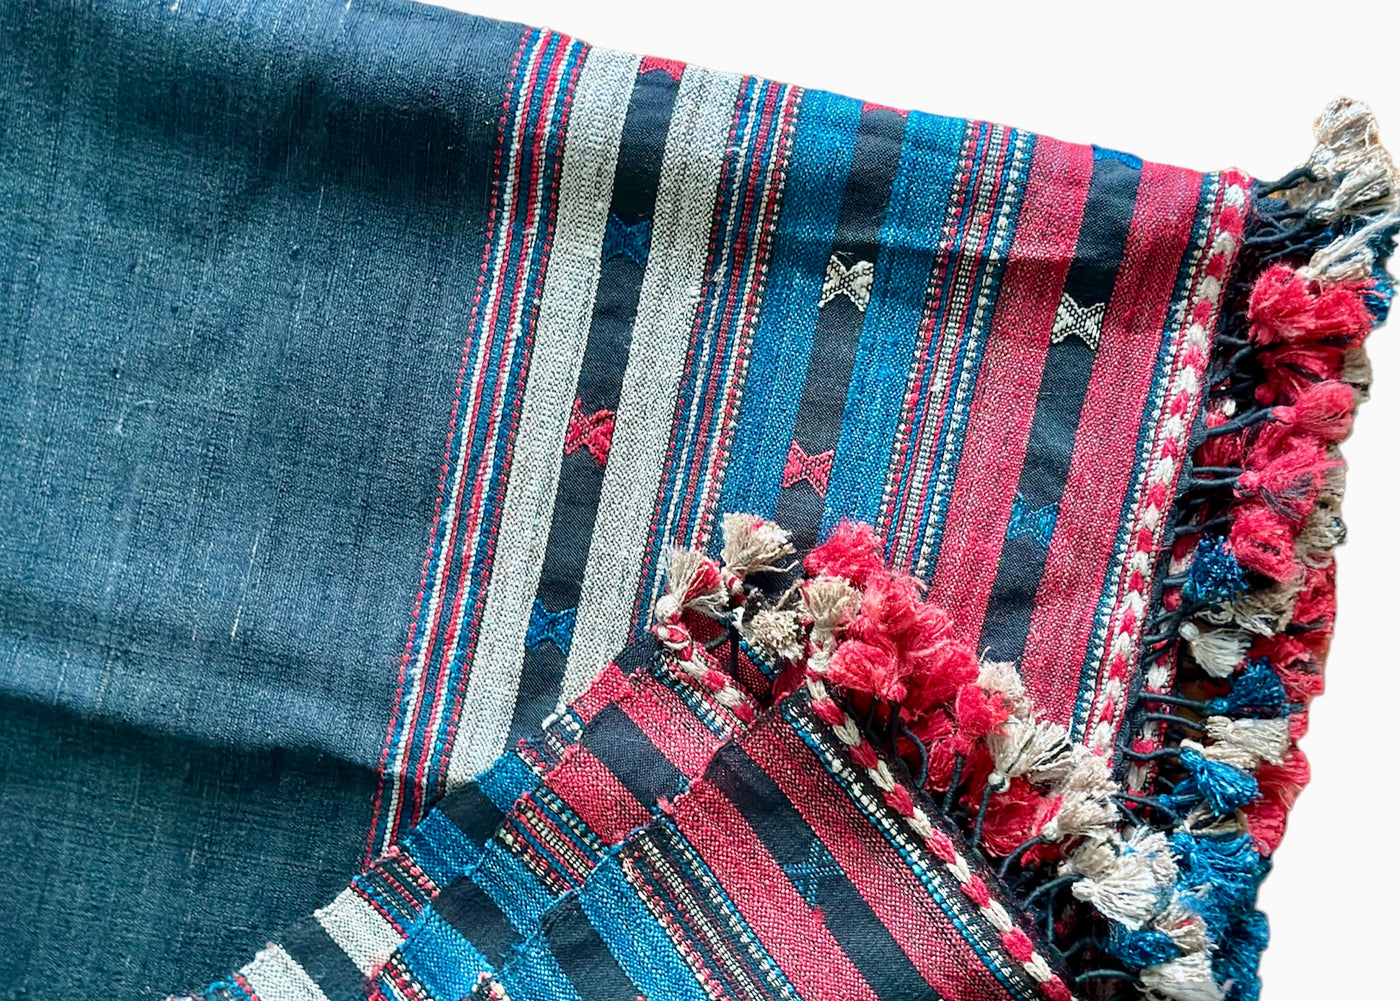 Indigo shawl